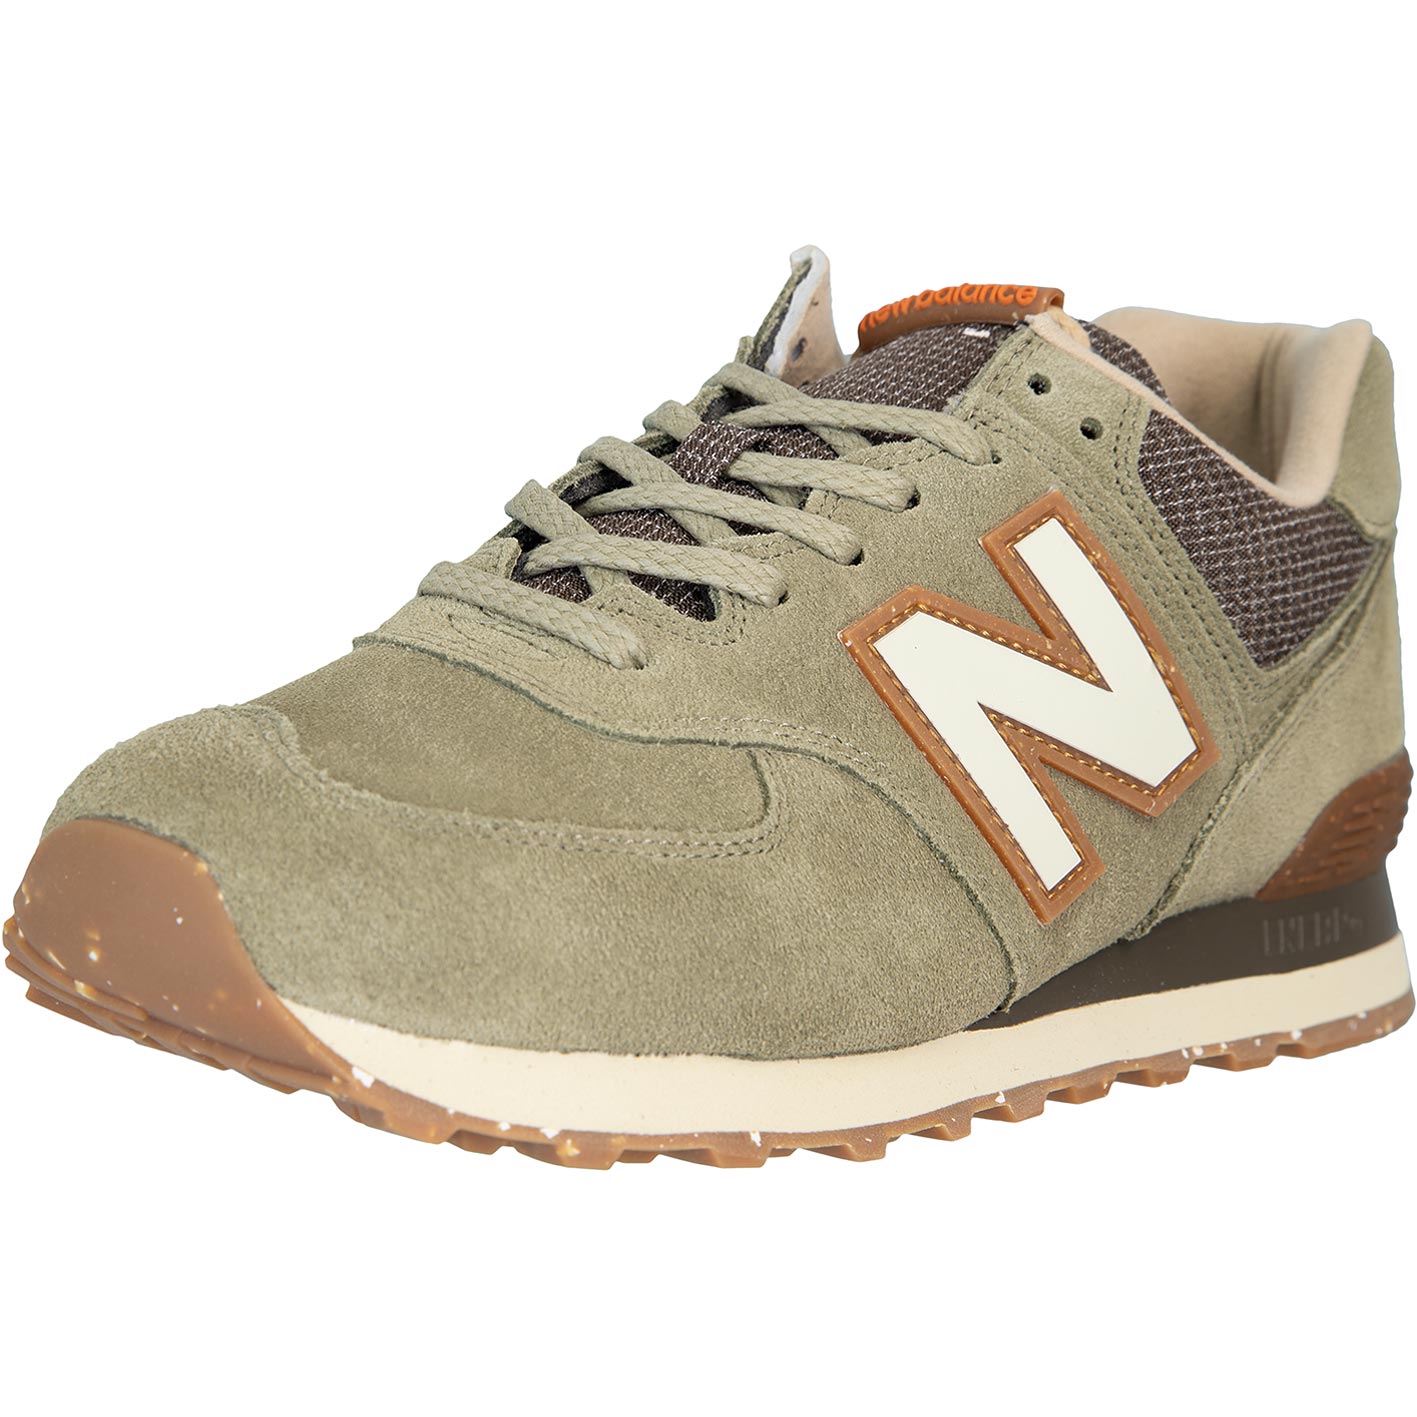 ☆ New Balance NB 574 Sneaker Schuhe olive - hier bestellen!